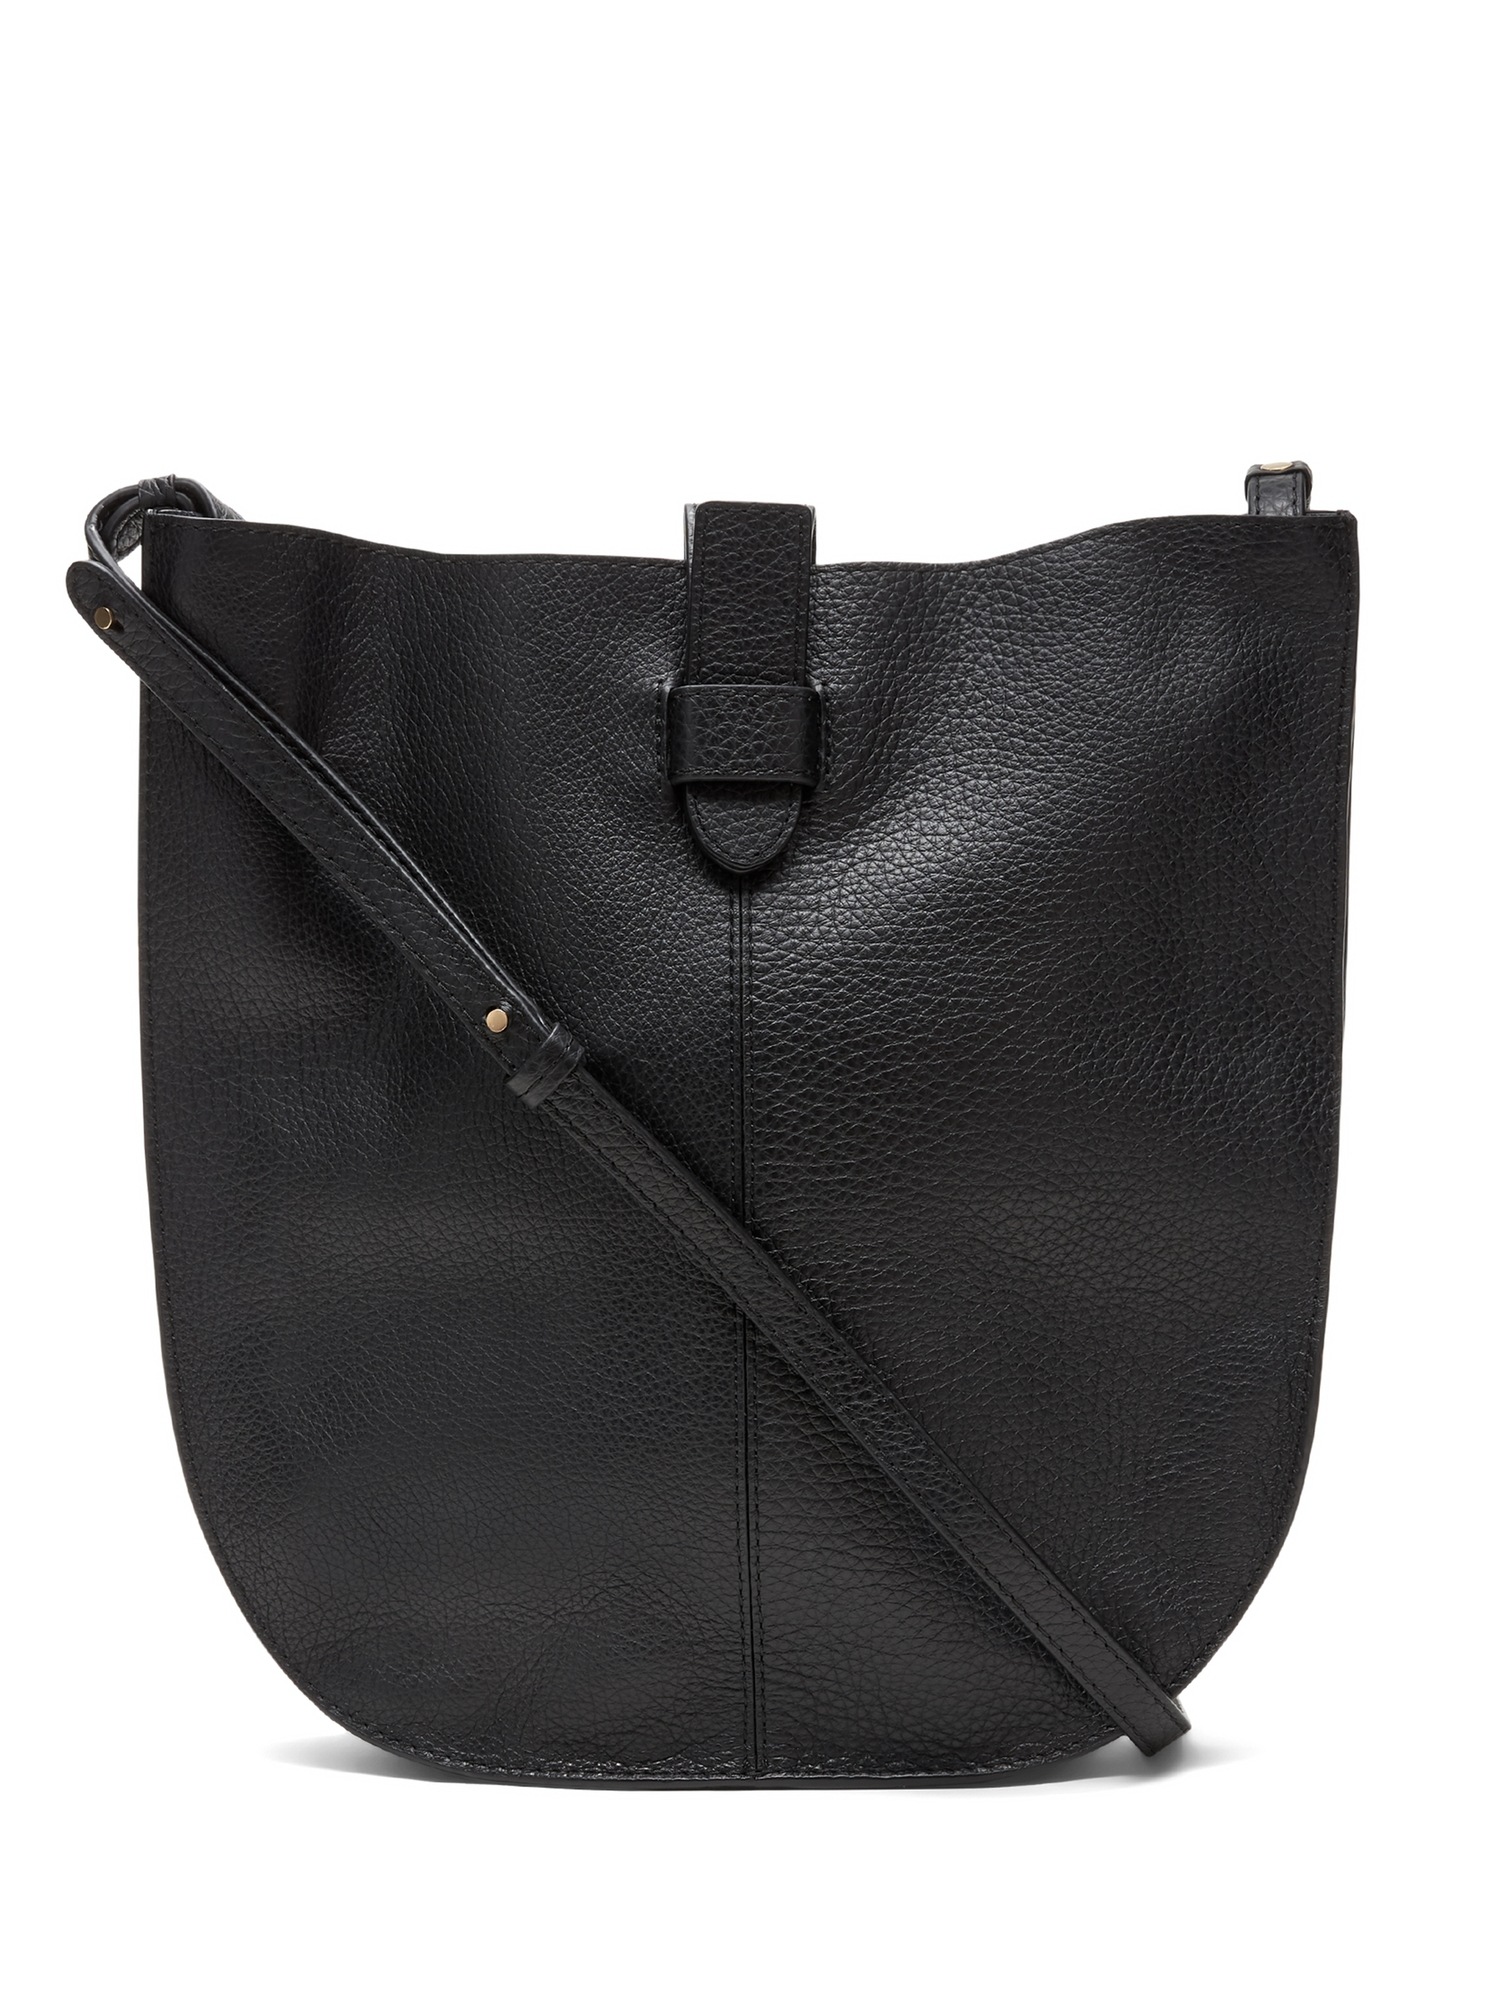 Italian Leather Hobo Bag